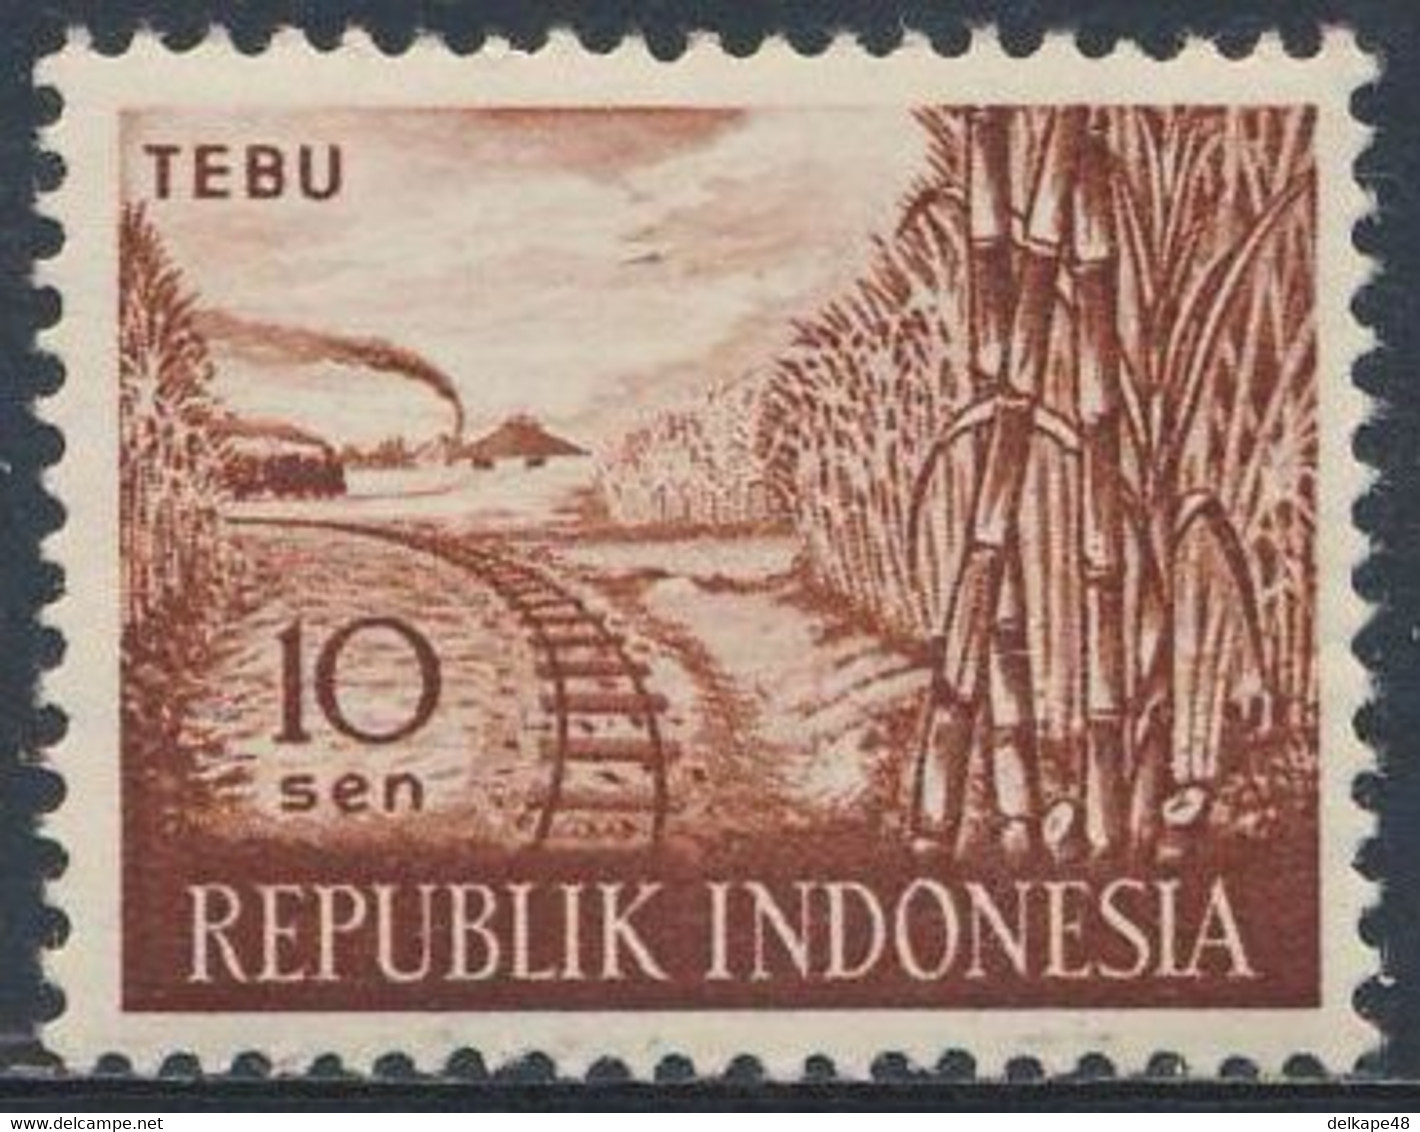 Indonesia Indonesie 1960 Mi 270 Sc 269 SG 831 * MH - Saccharum Officinarum: Sugar Cane + Railway Line / Zuckerrohr - Vegetables